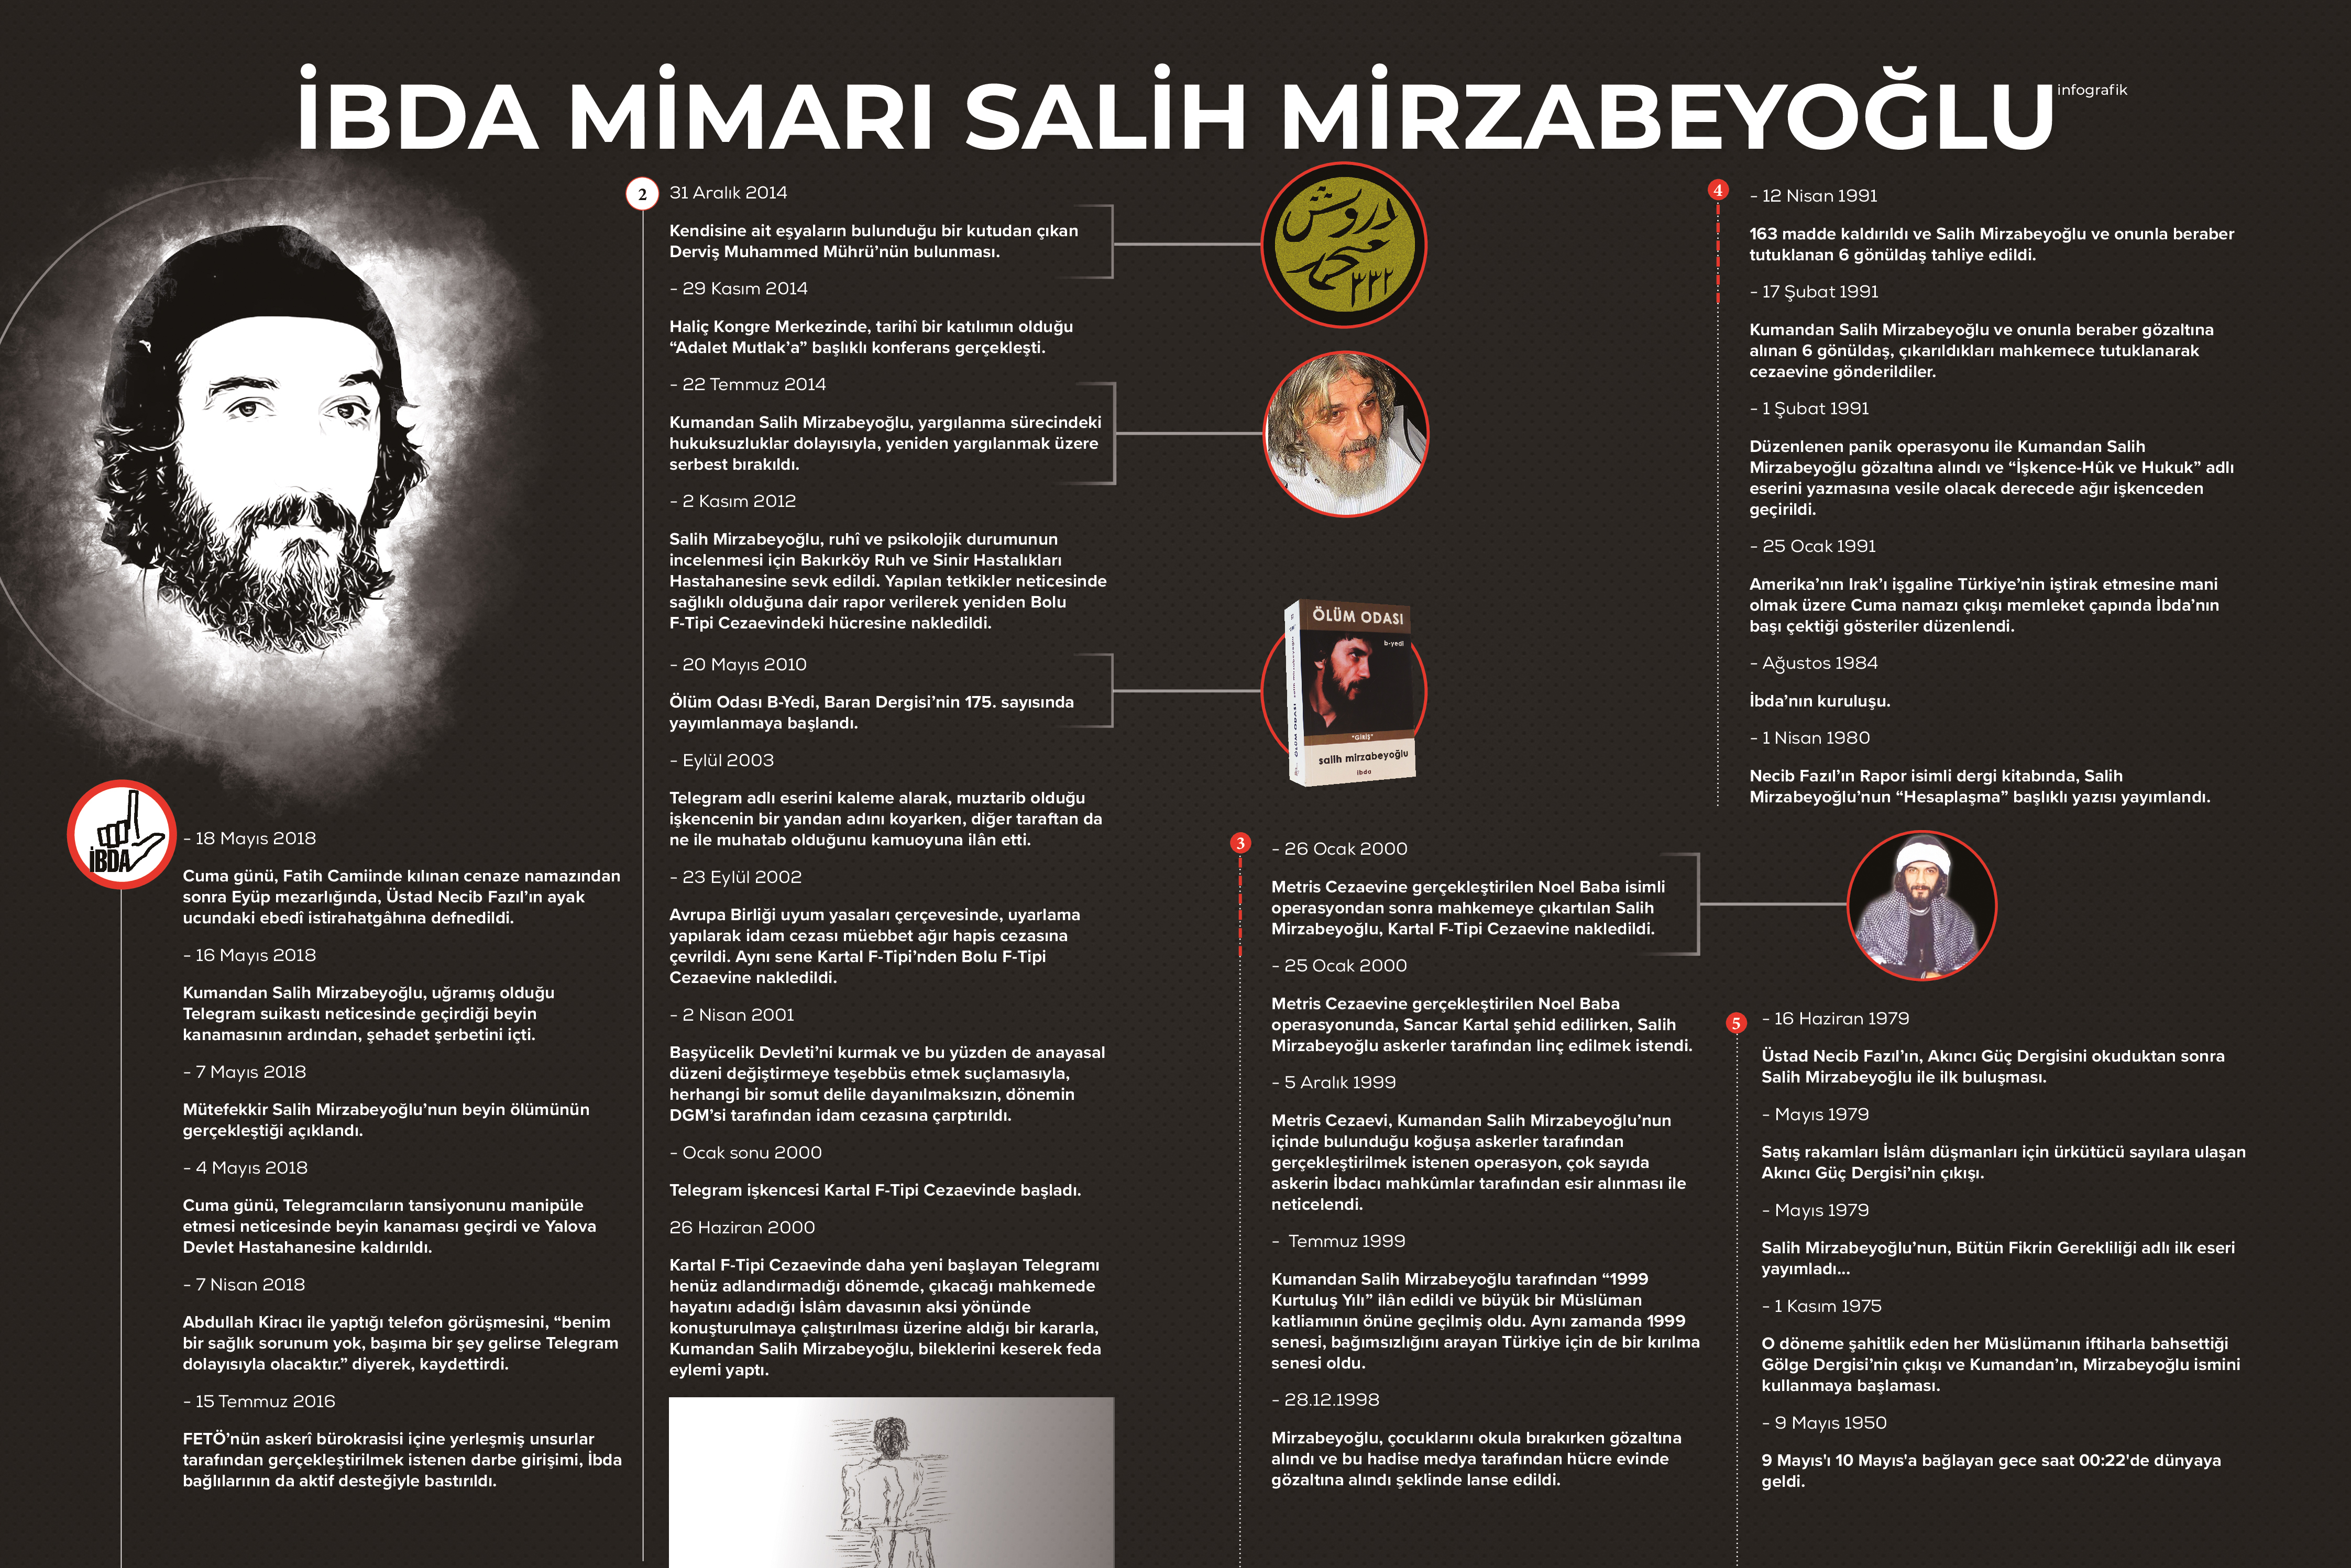 Salih Mirzabeyoğlu’nun kronolojik hayatı